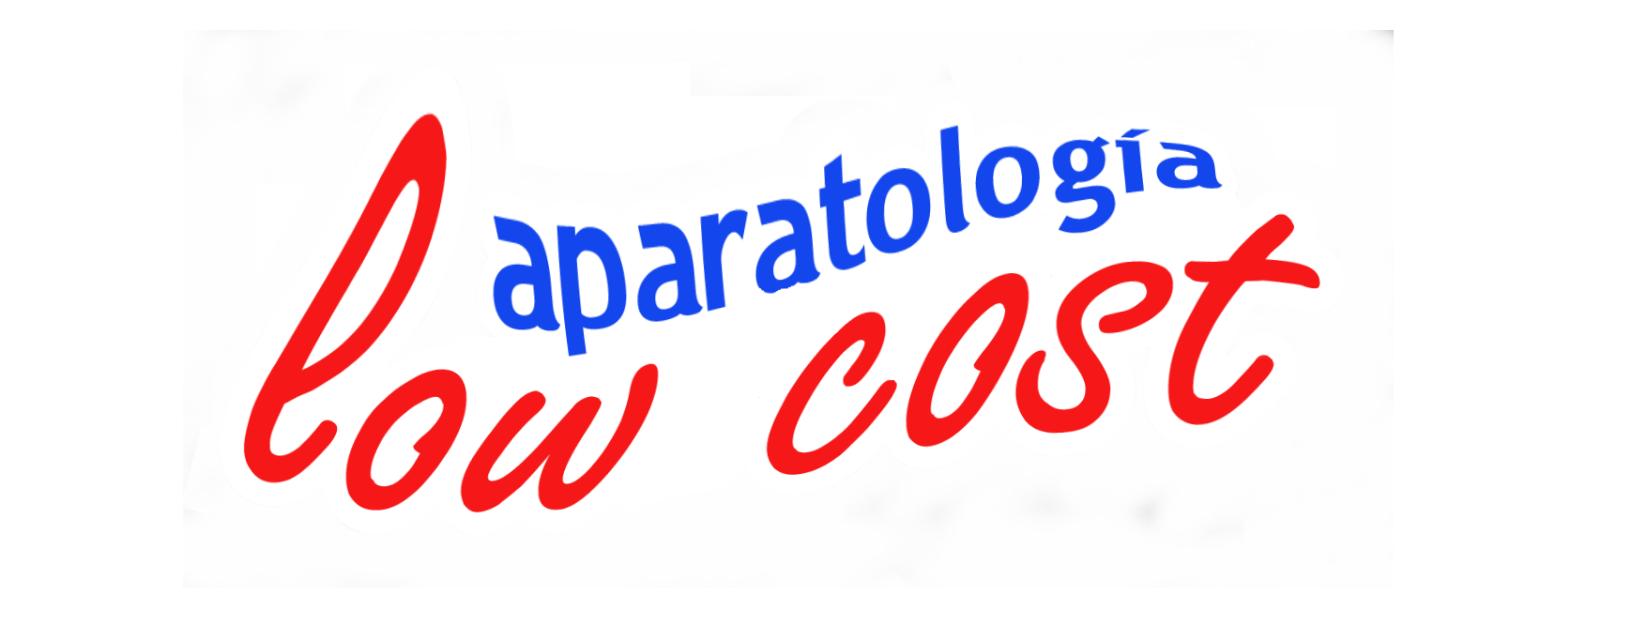 Nueva pagina de aparatologia low cost